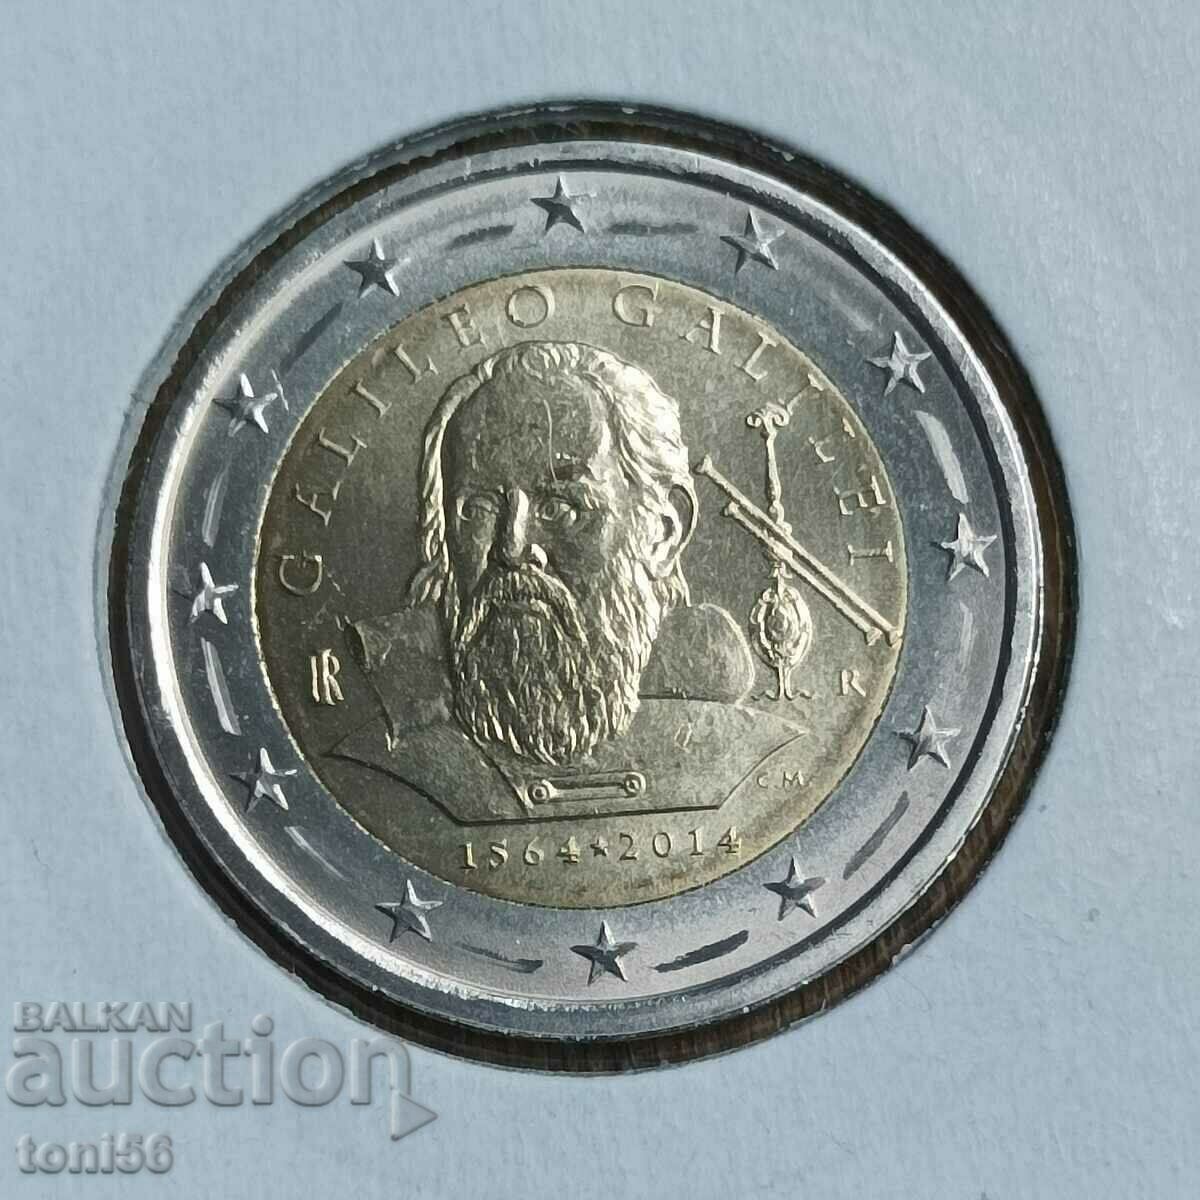 Italy 2 euro 2014 - Galileo Galilei